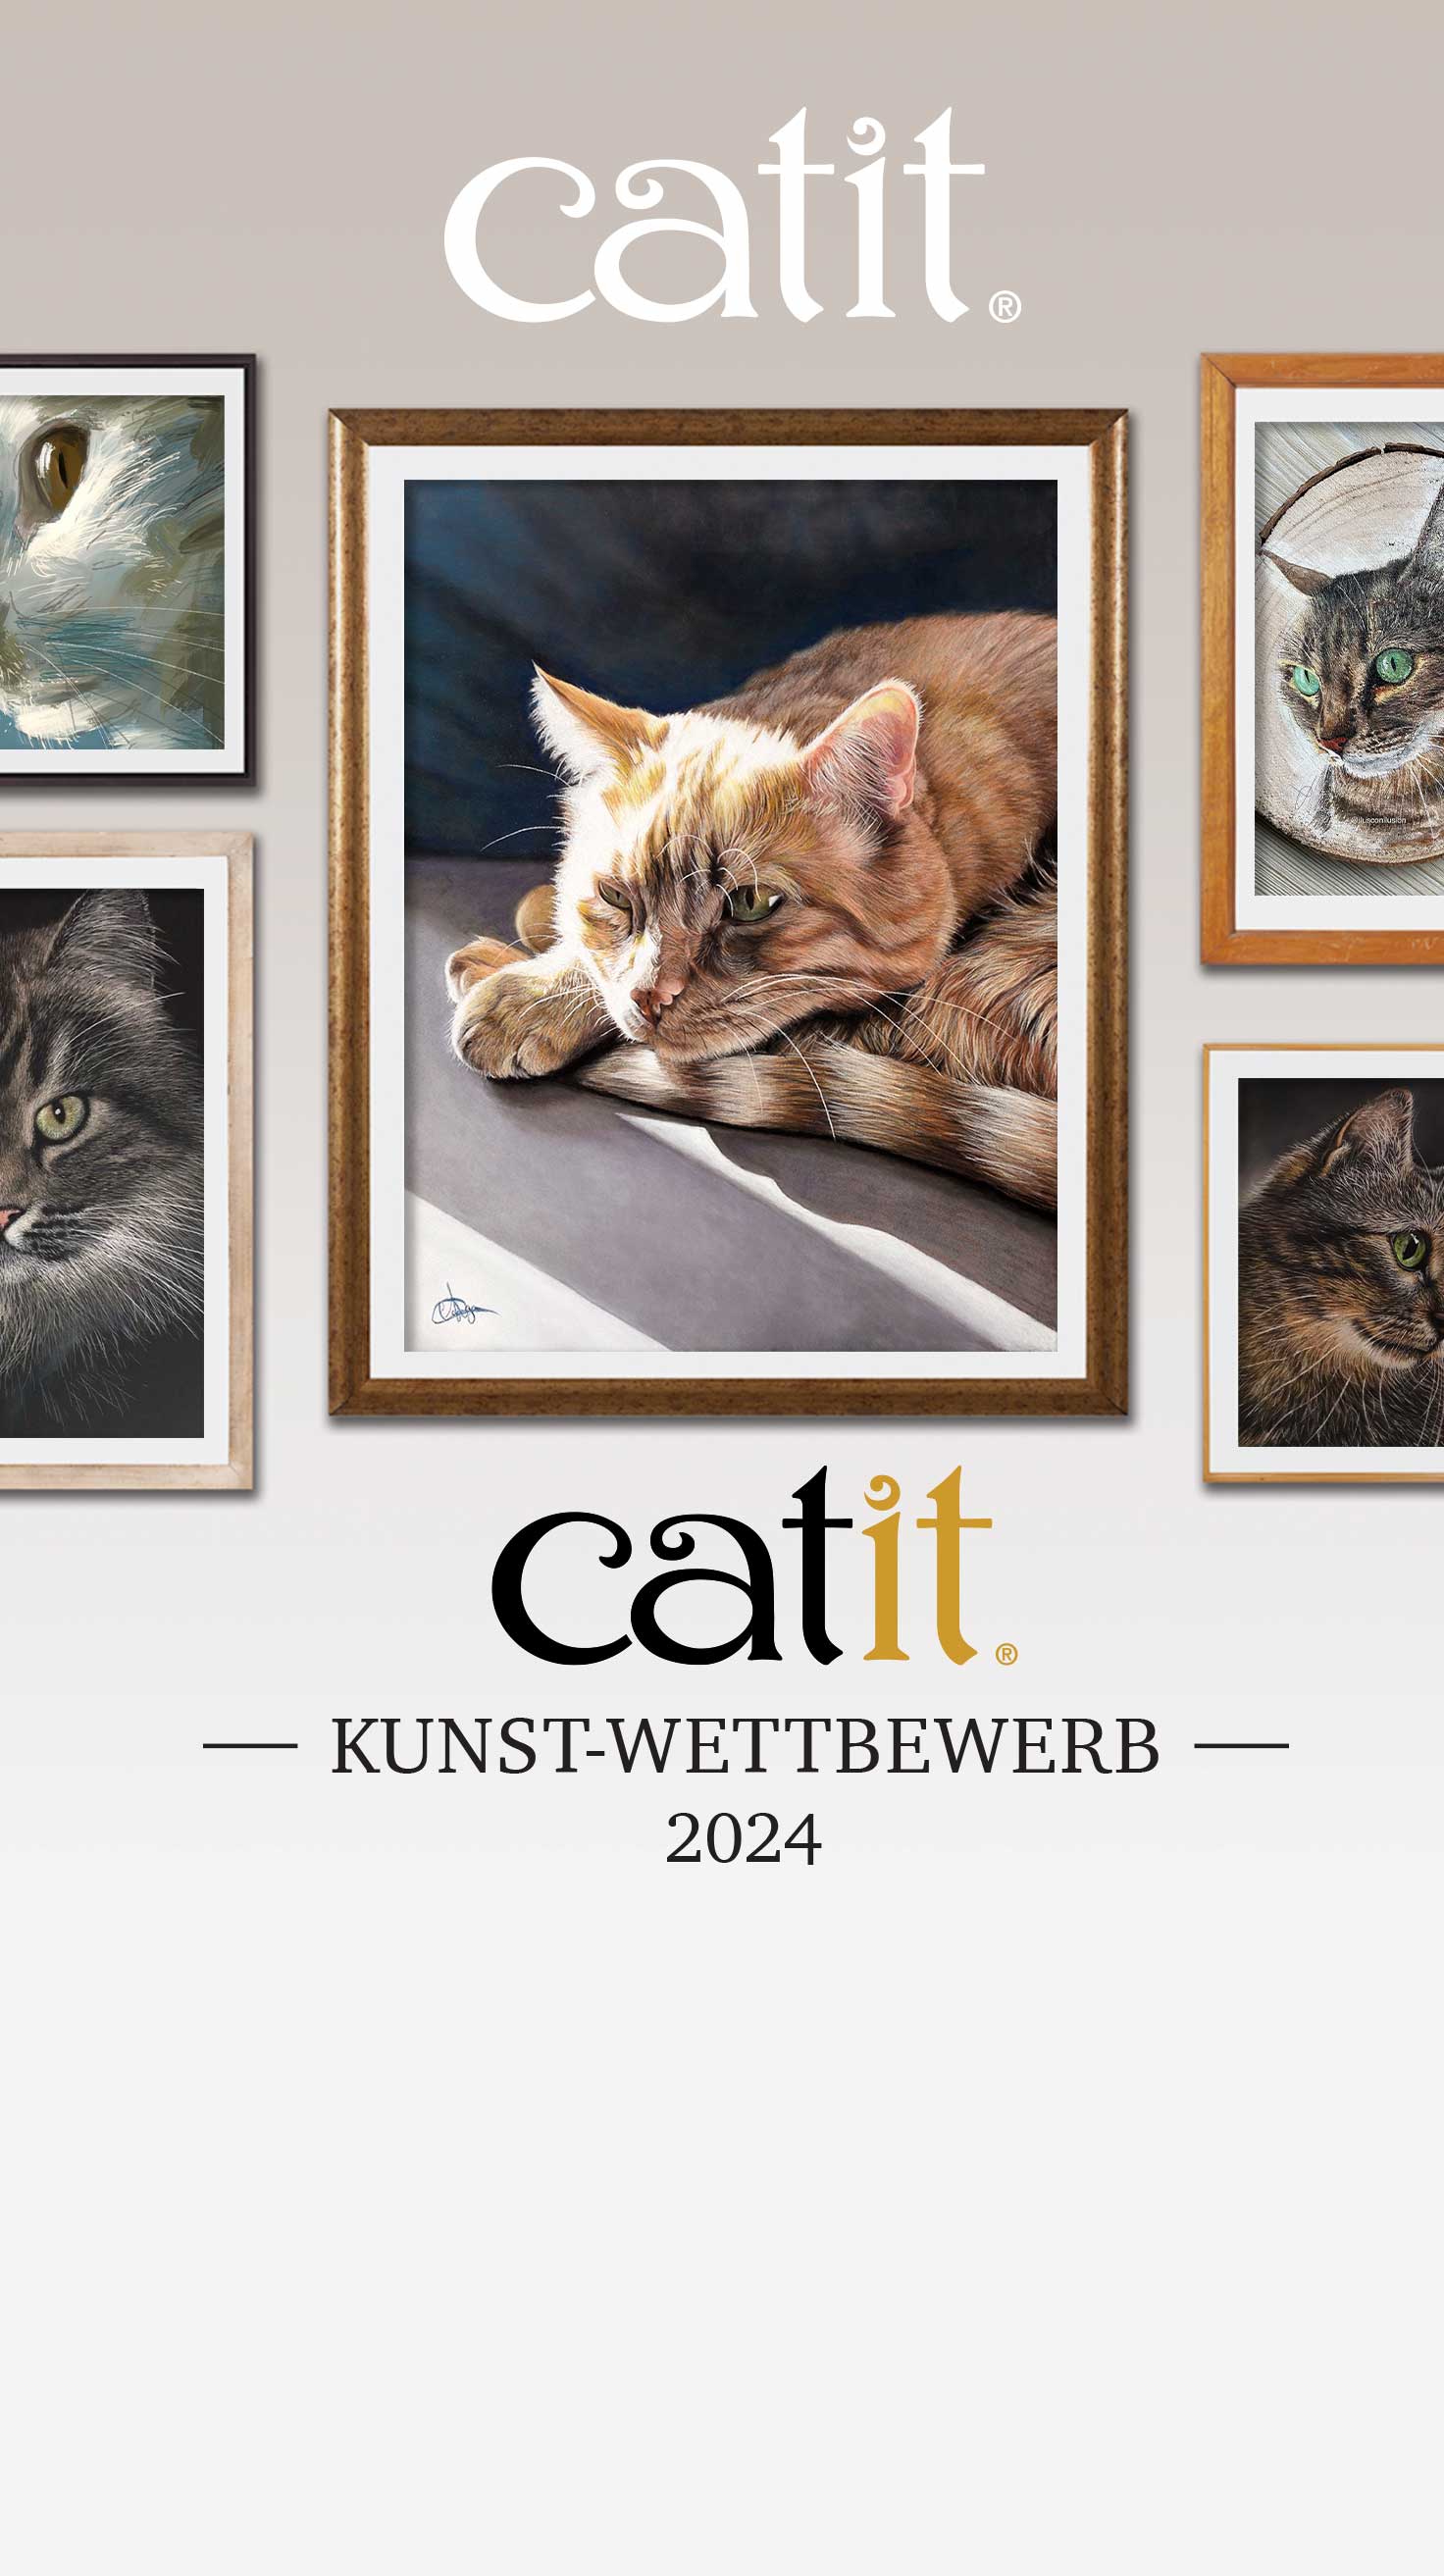 Catit KunstWettbewerb 2024